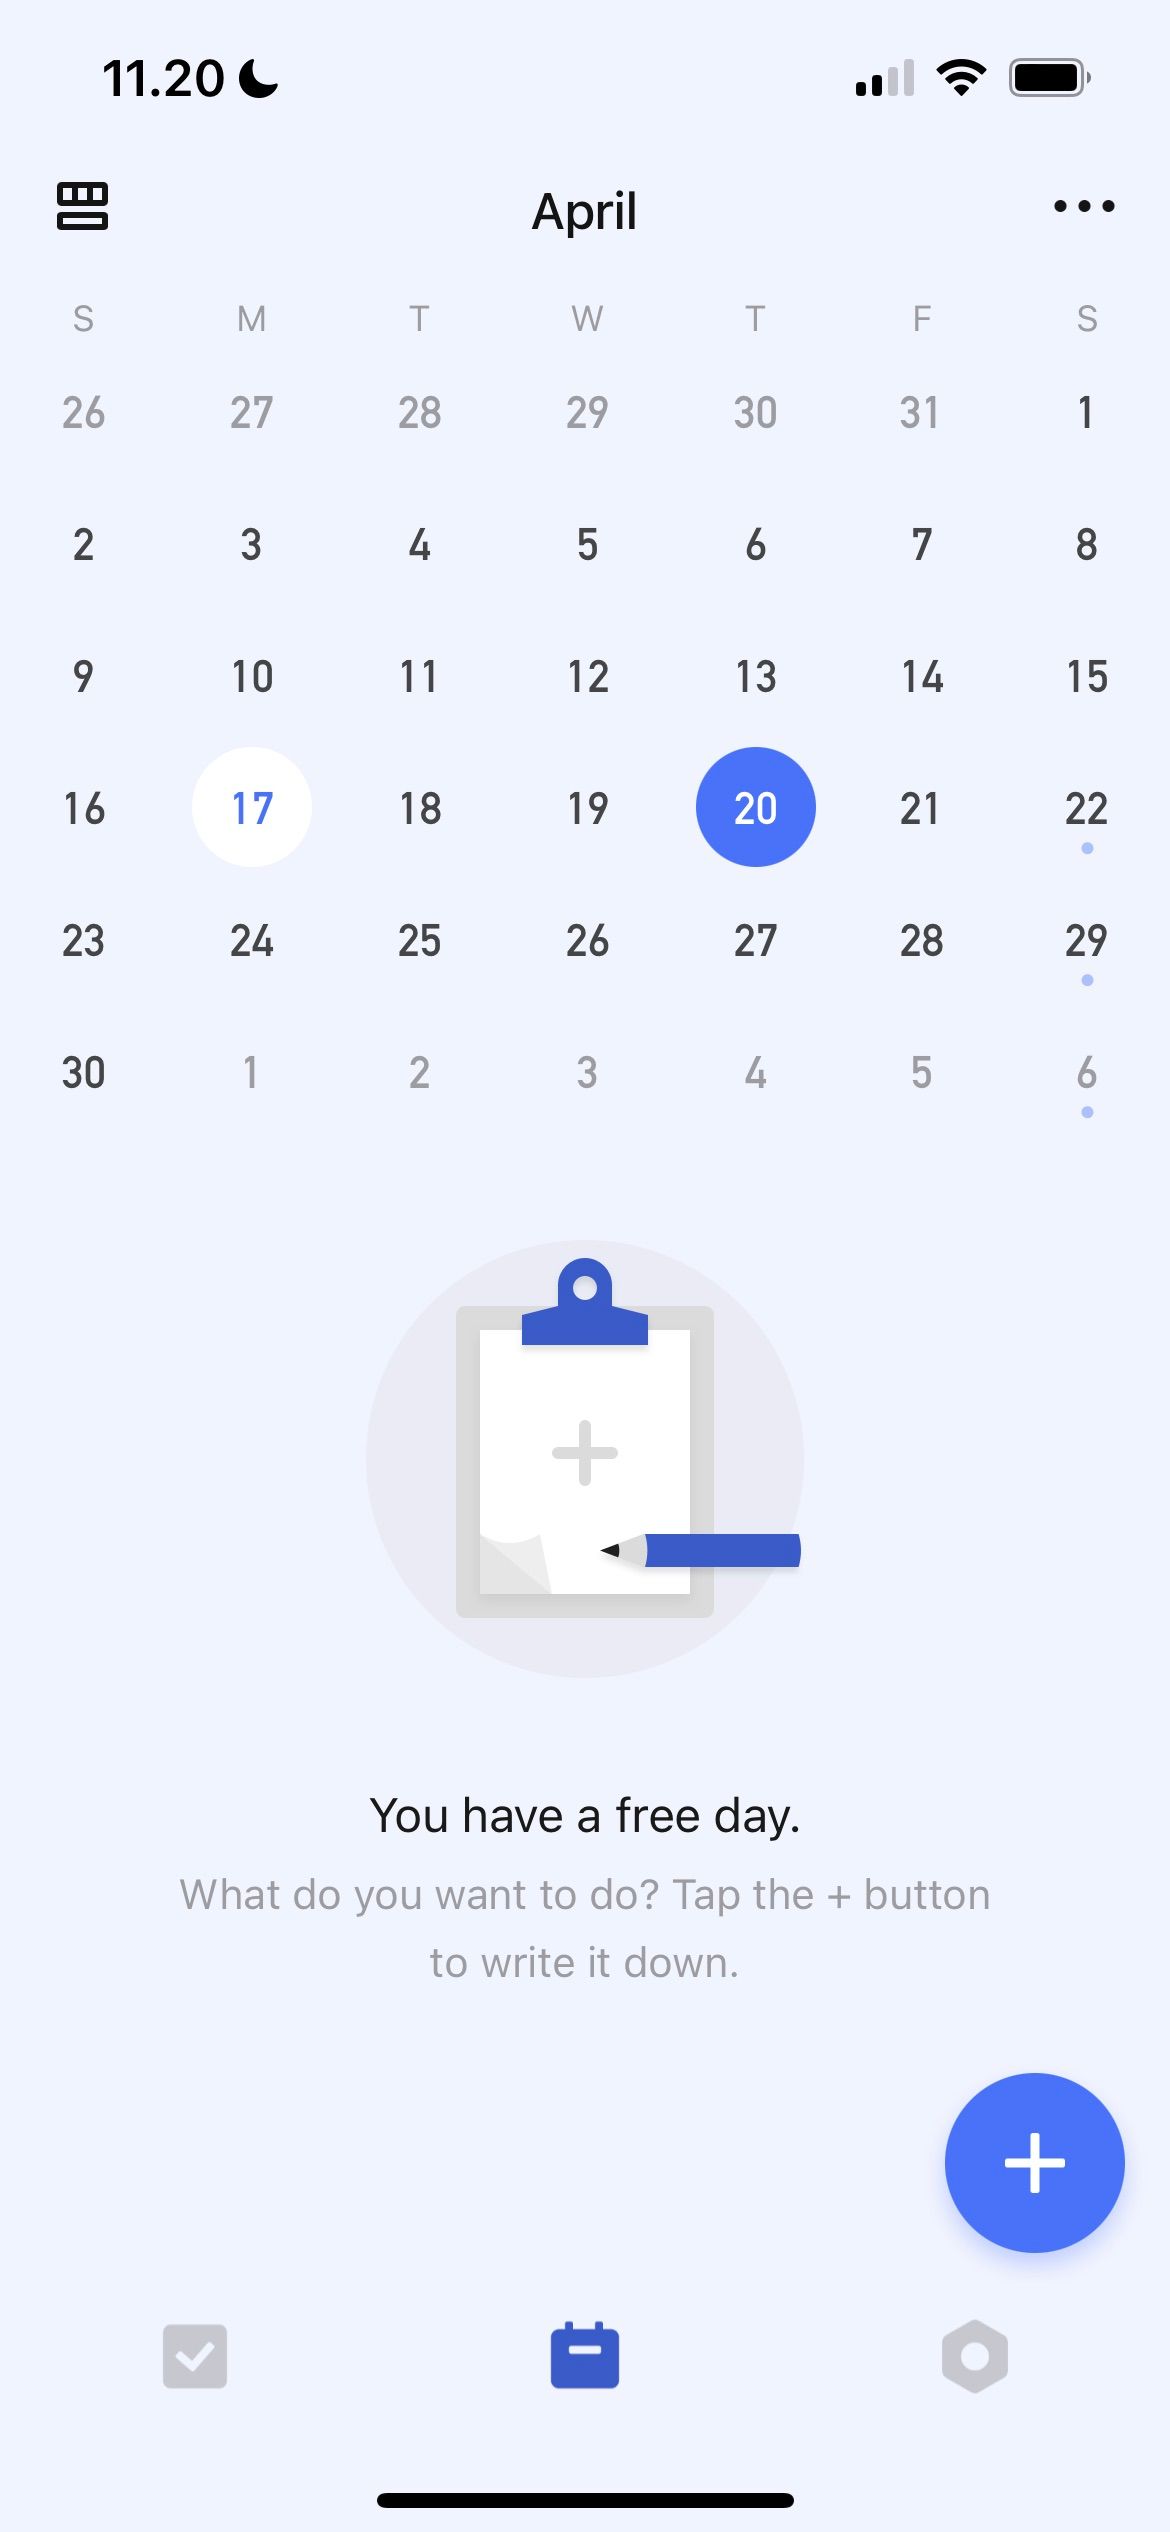 Calendar View in TickTick Screenshot